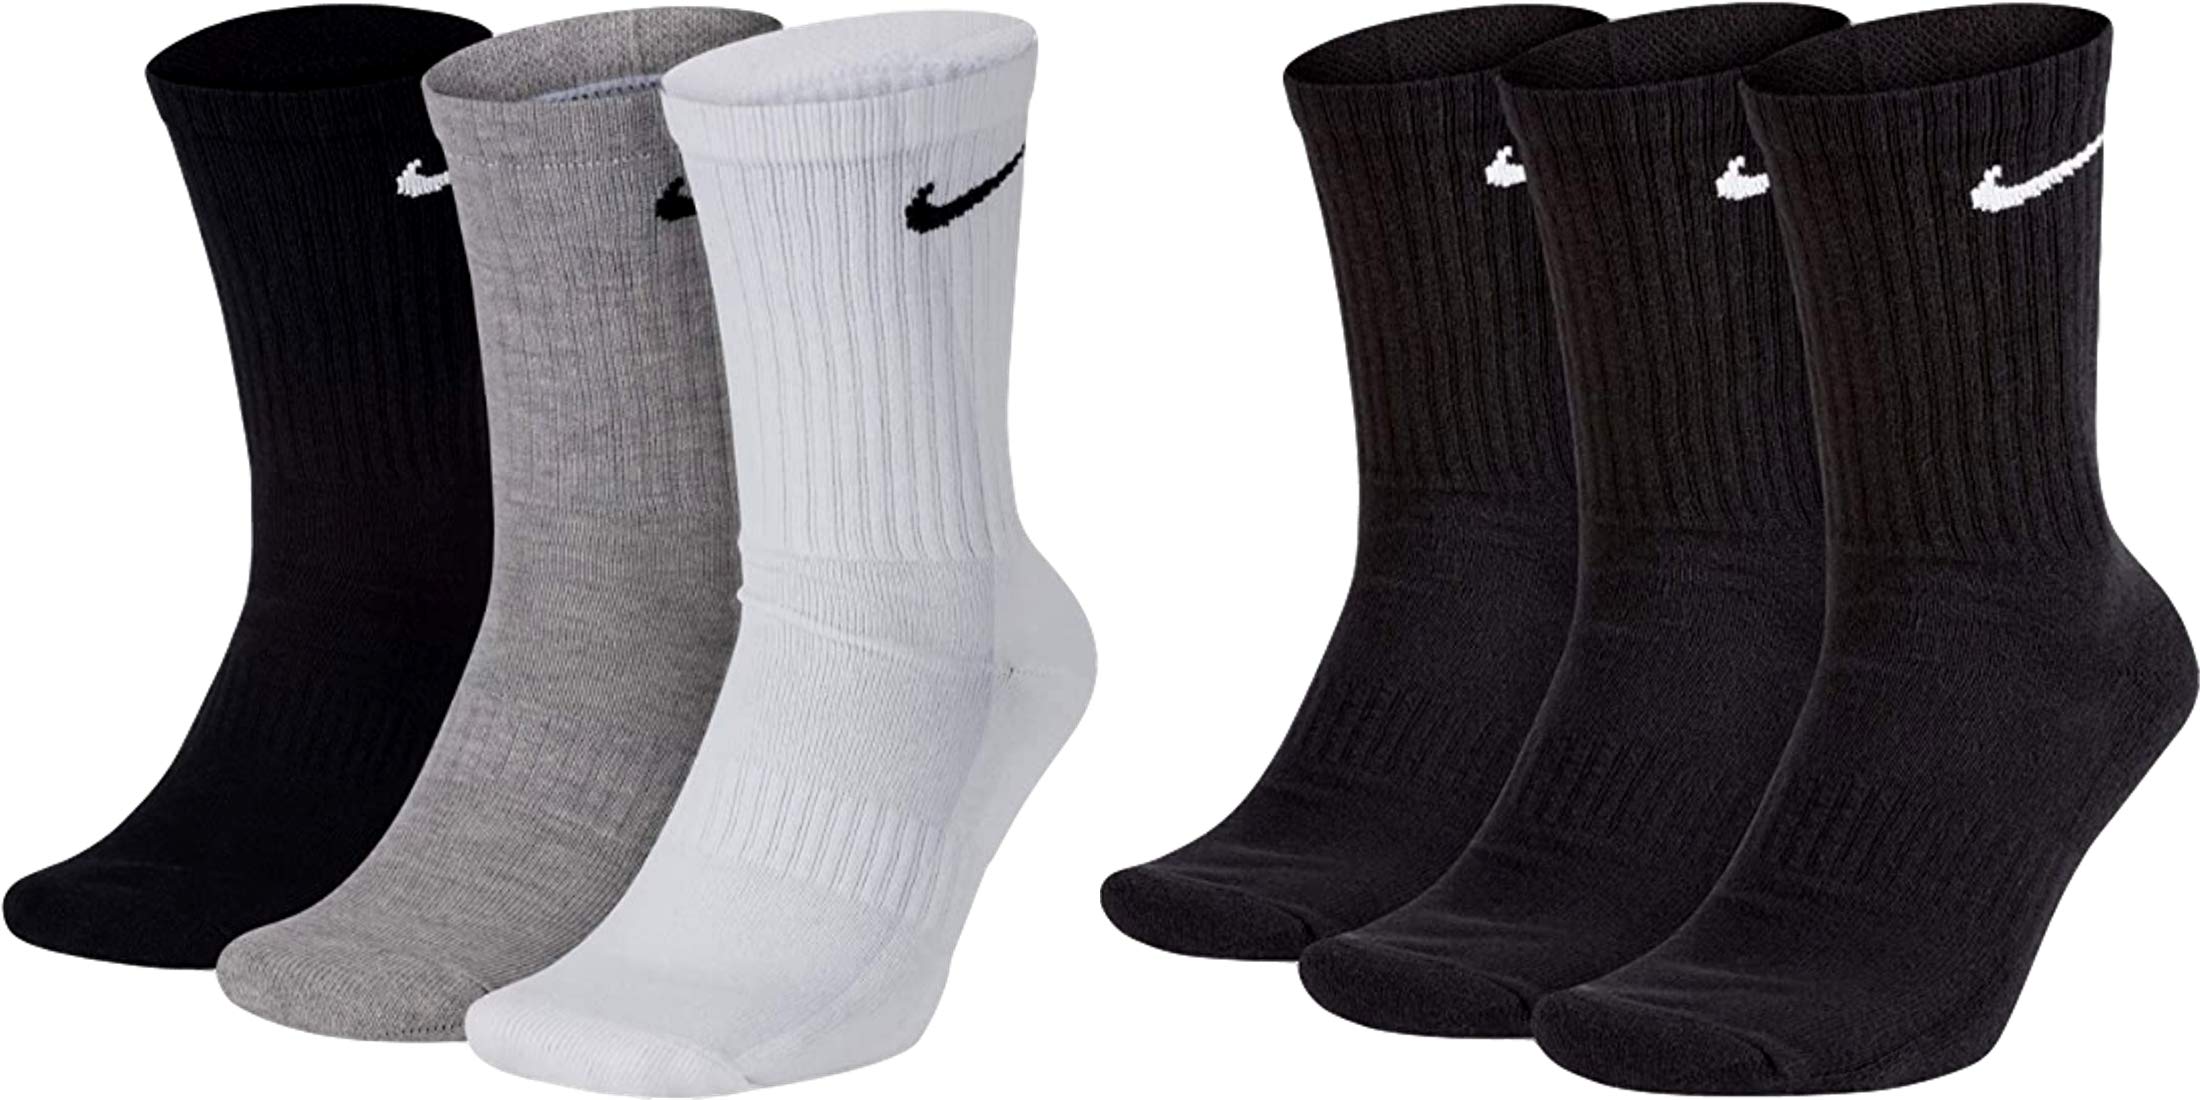 Nike 6 Paar Socken Herren Damen Weiß Grau Schwarz Tennissocken Sparset SX7664, Farbe:schwarz weiß/grau/schwarz, Größe:42-46